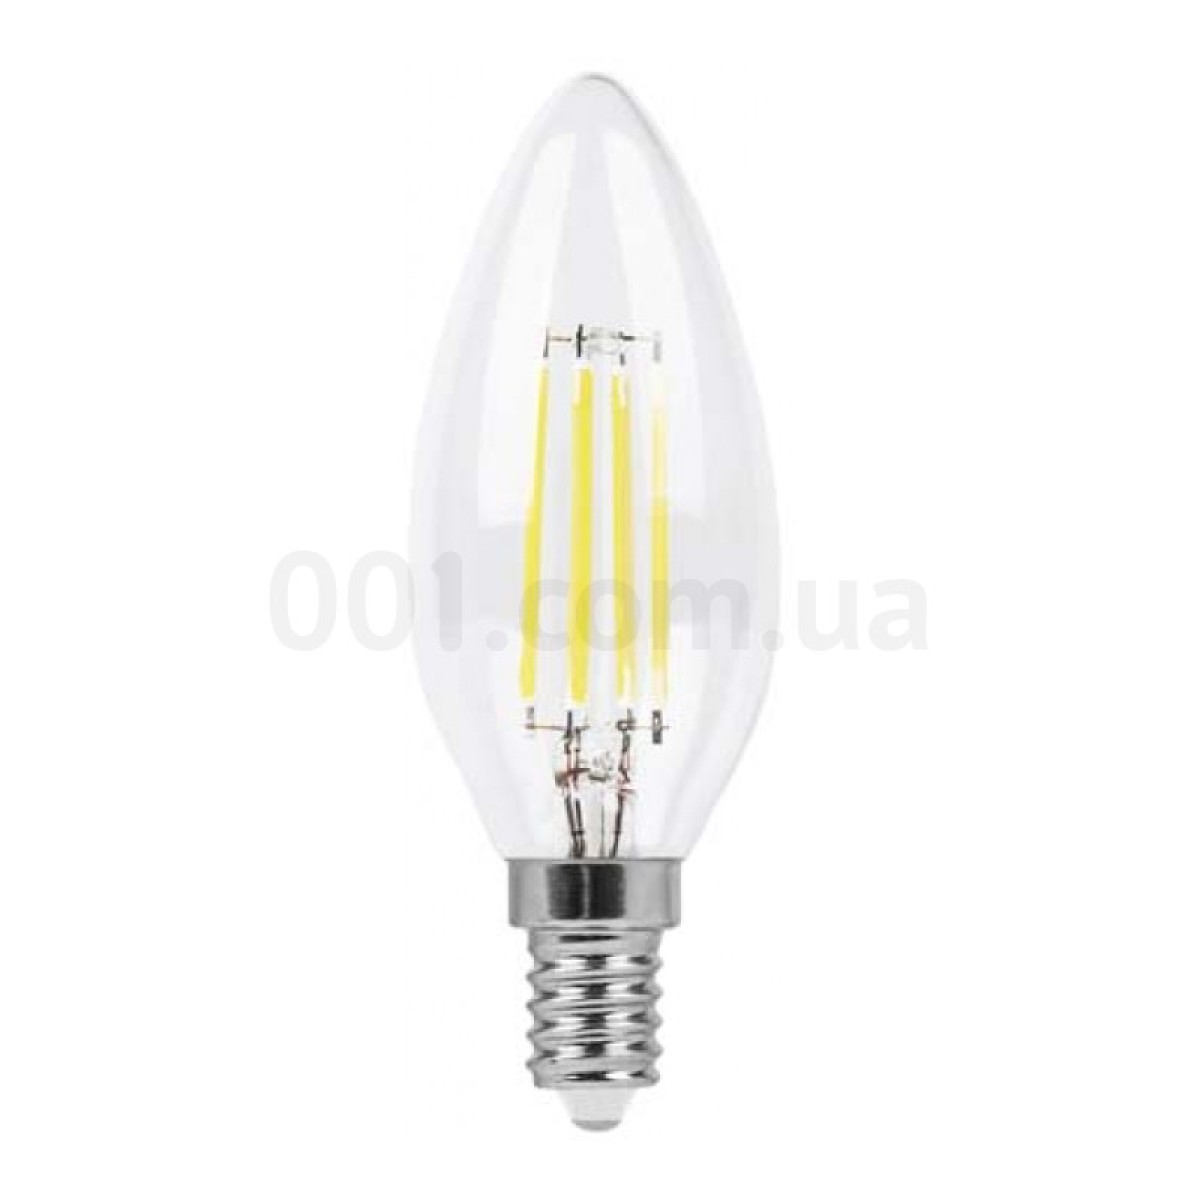 Світлодіодна лампа LB-58 C37 (свічка) філамент 4Вт 4000K E14, Feron 98_98.jpg